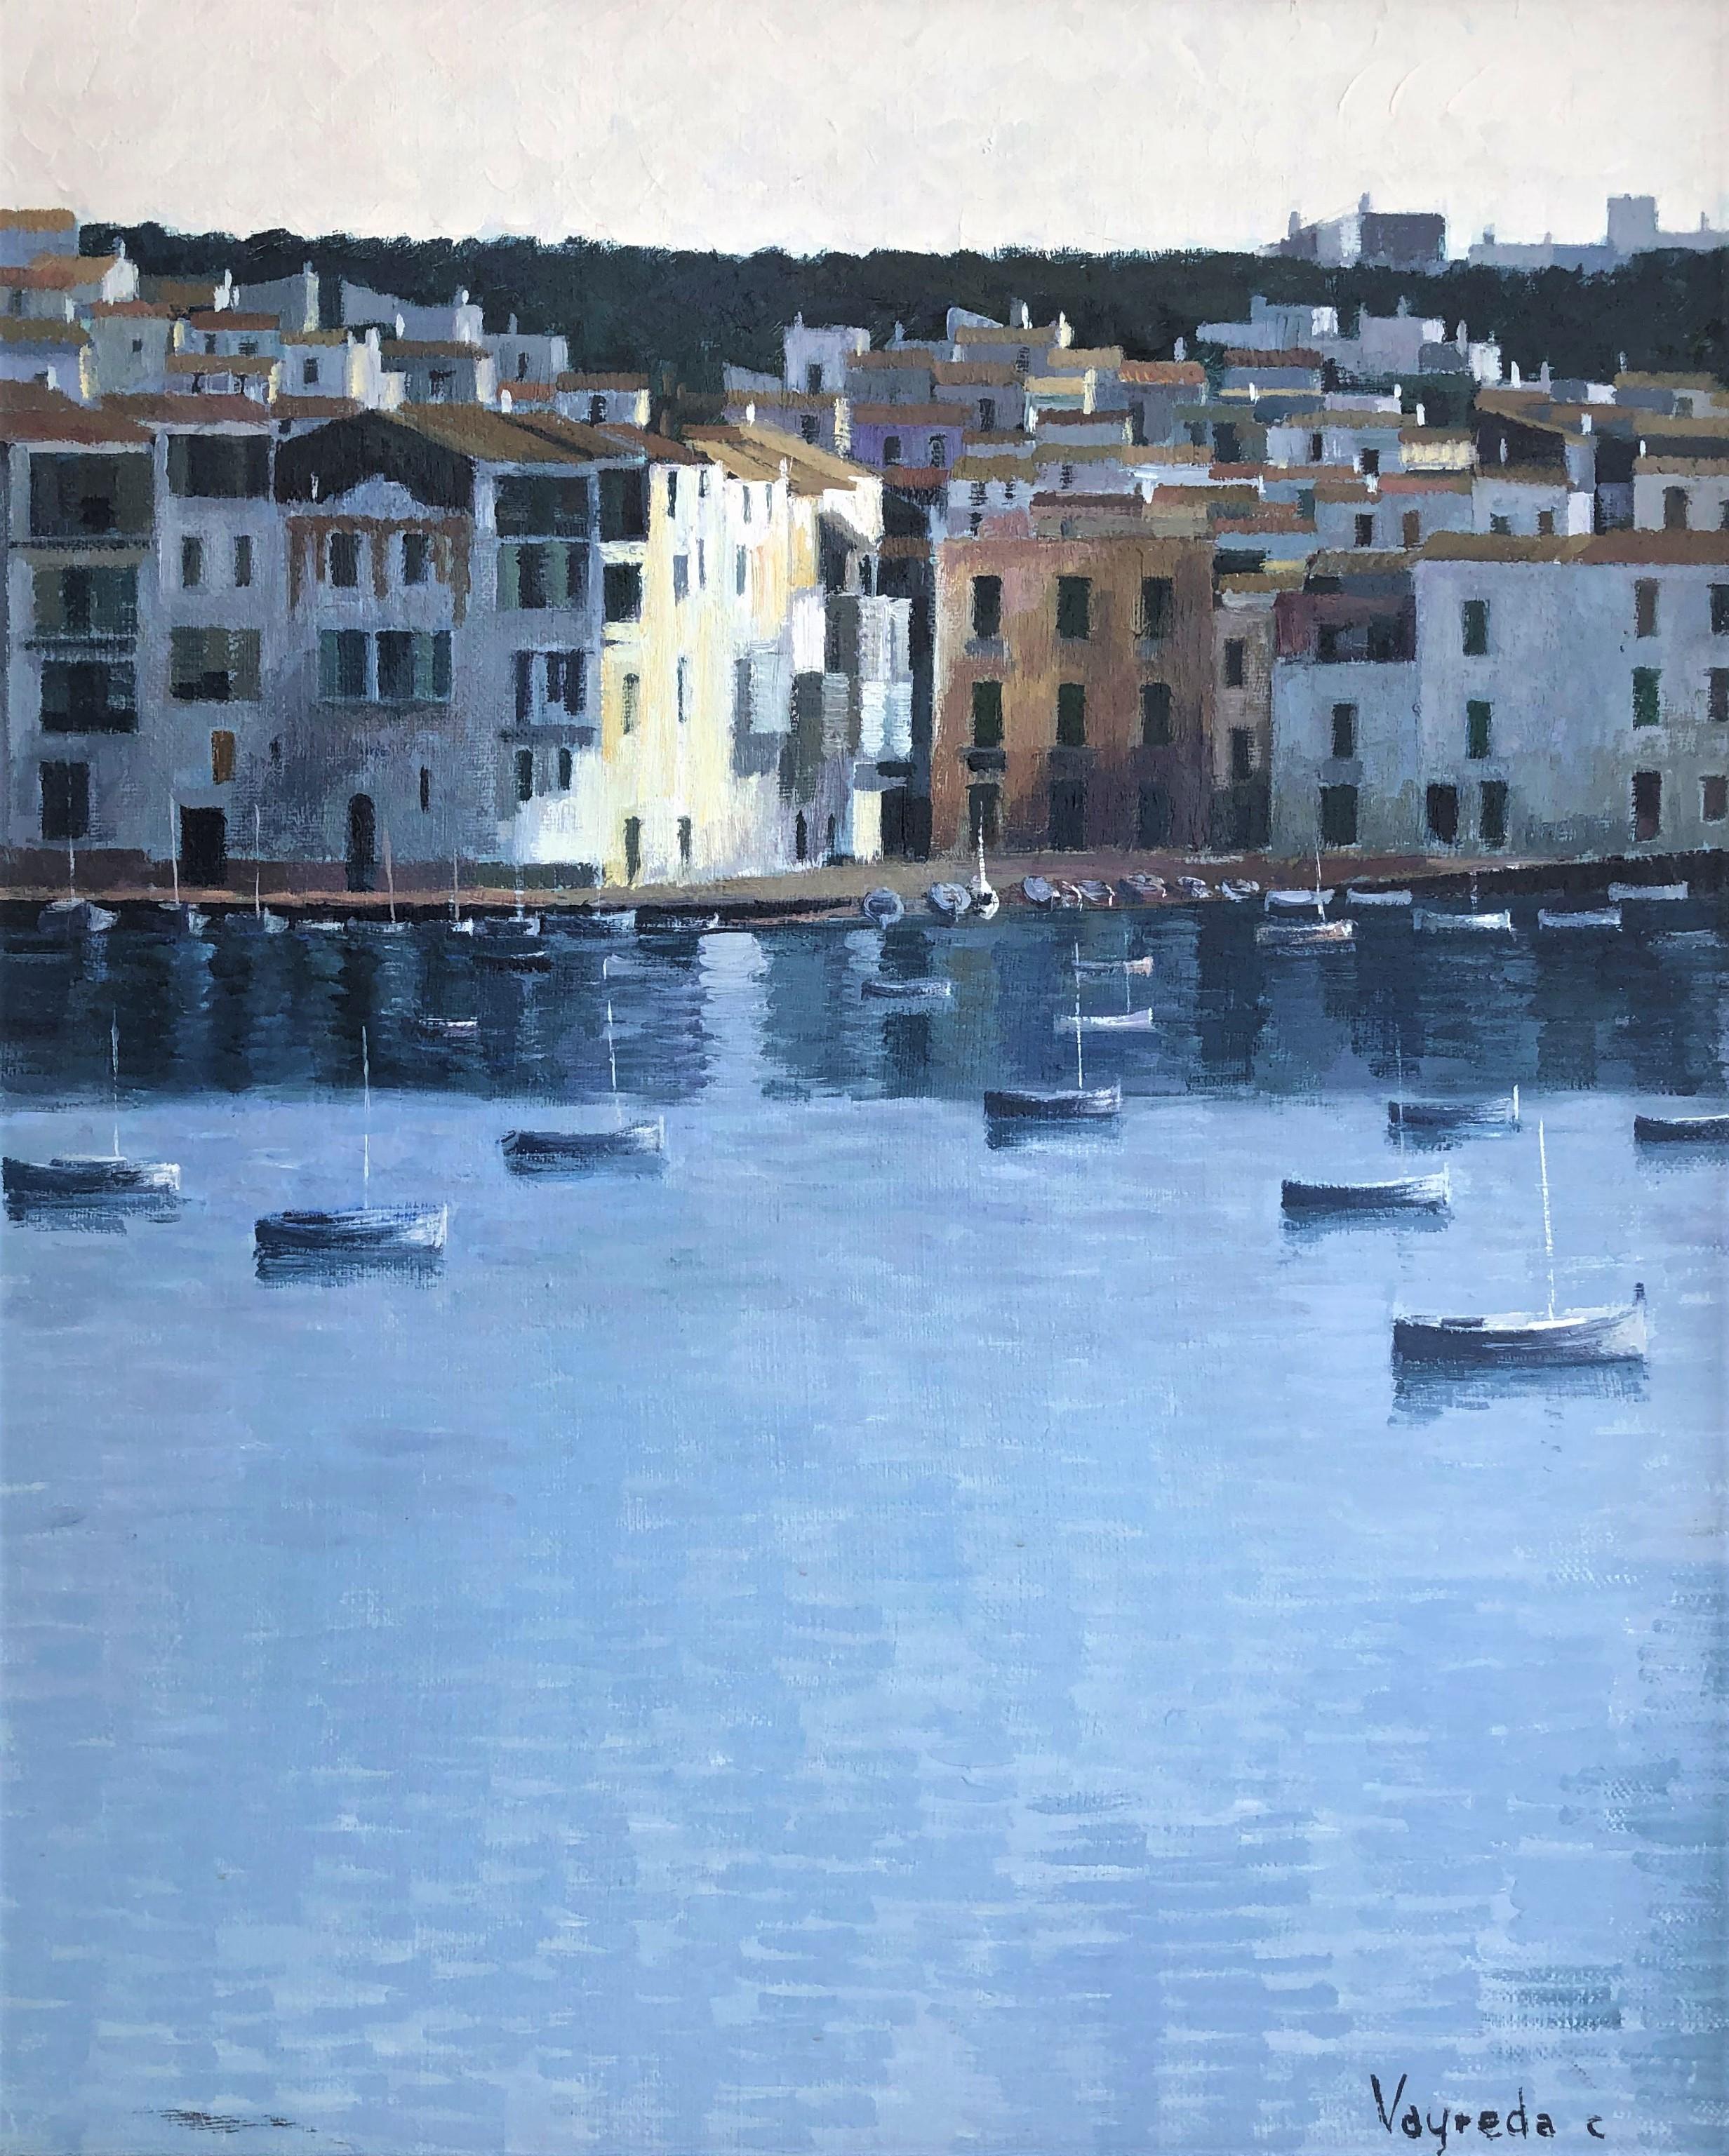 Landscape Painting Josep Maria Vayreda Canadell - Vue de Cadaques Espagne paysage marin huile sur toile peinture